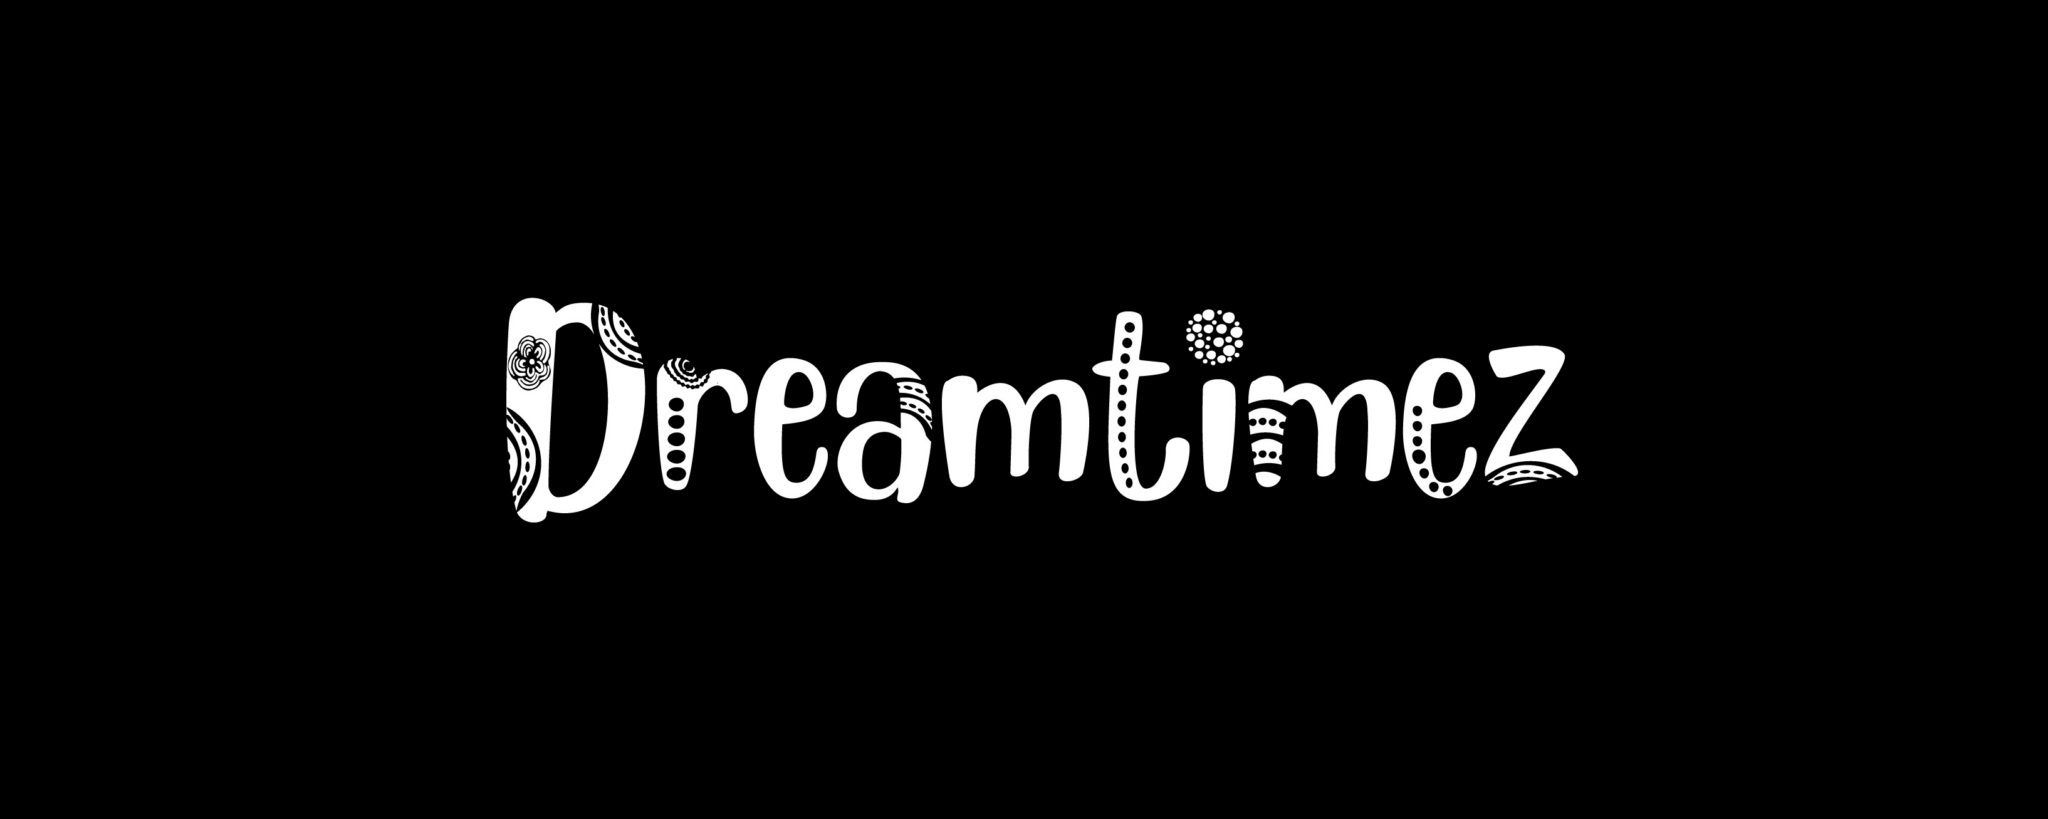 Dreamtimez